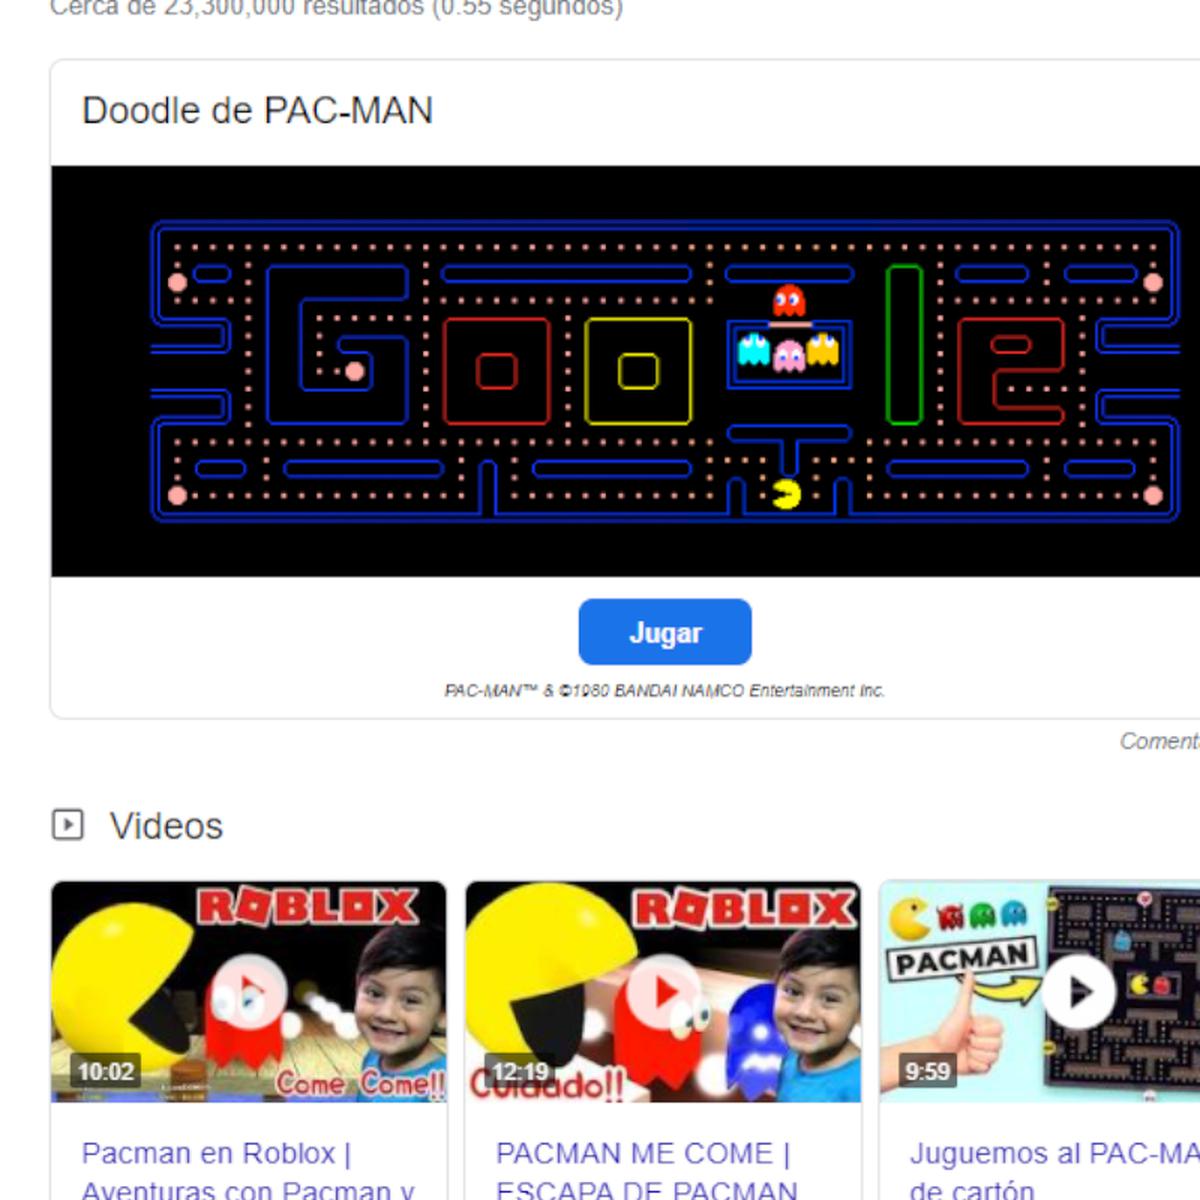 Google, Juegos gratis y sin internet, Offline, Online, En línea, Doodle, Pac-man, Tetris, Pacman, Dinosaurio, Buscaminas, Solitario, Snake, T-Rex